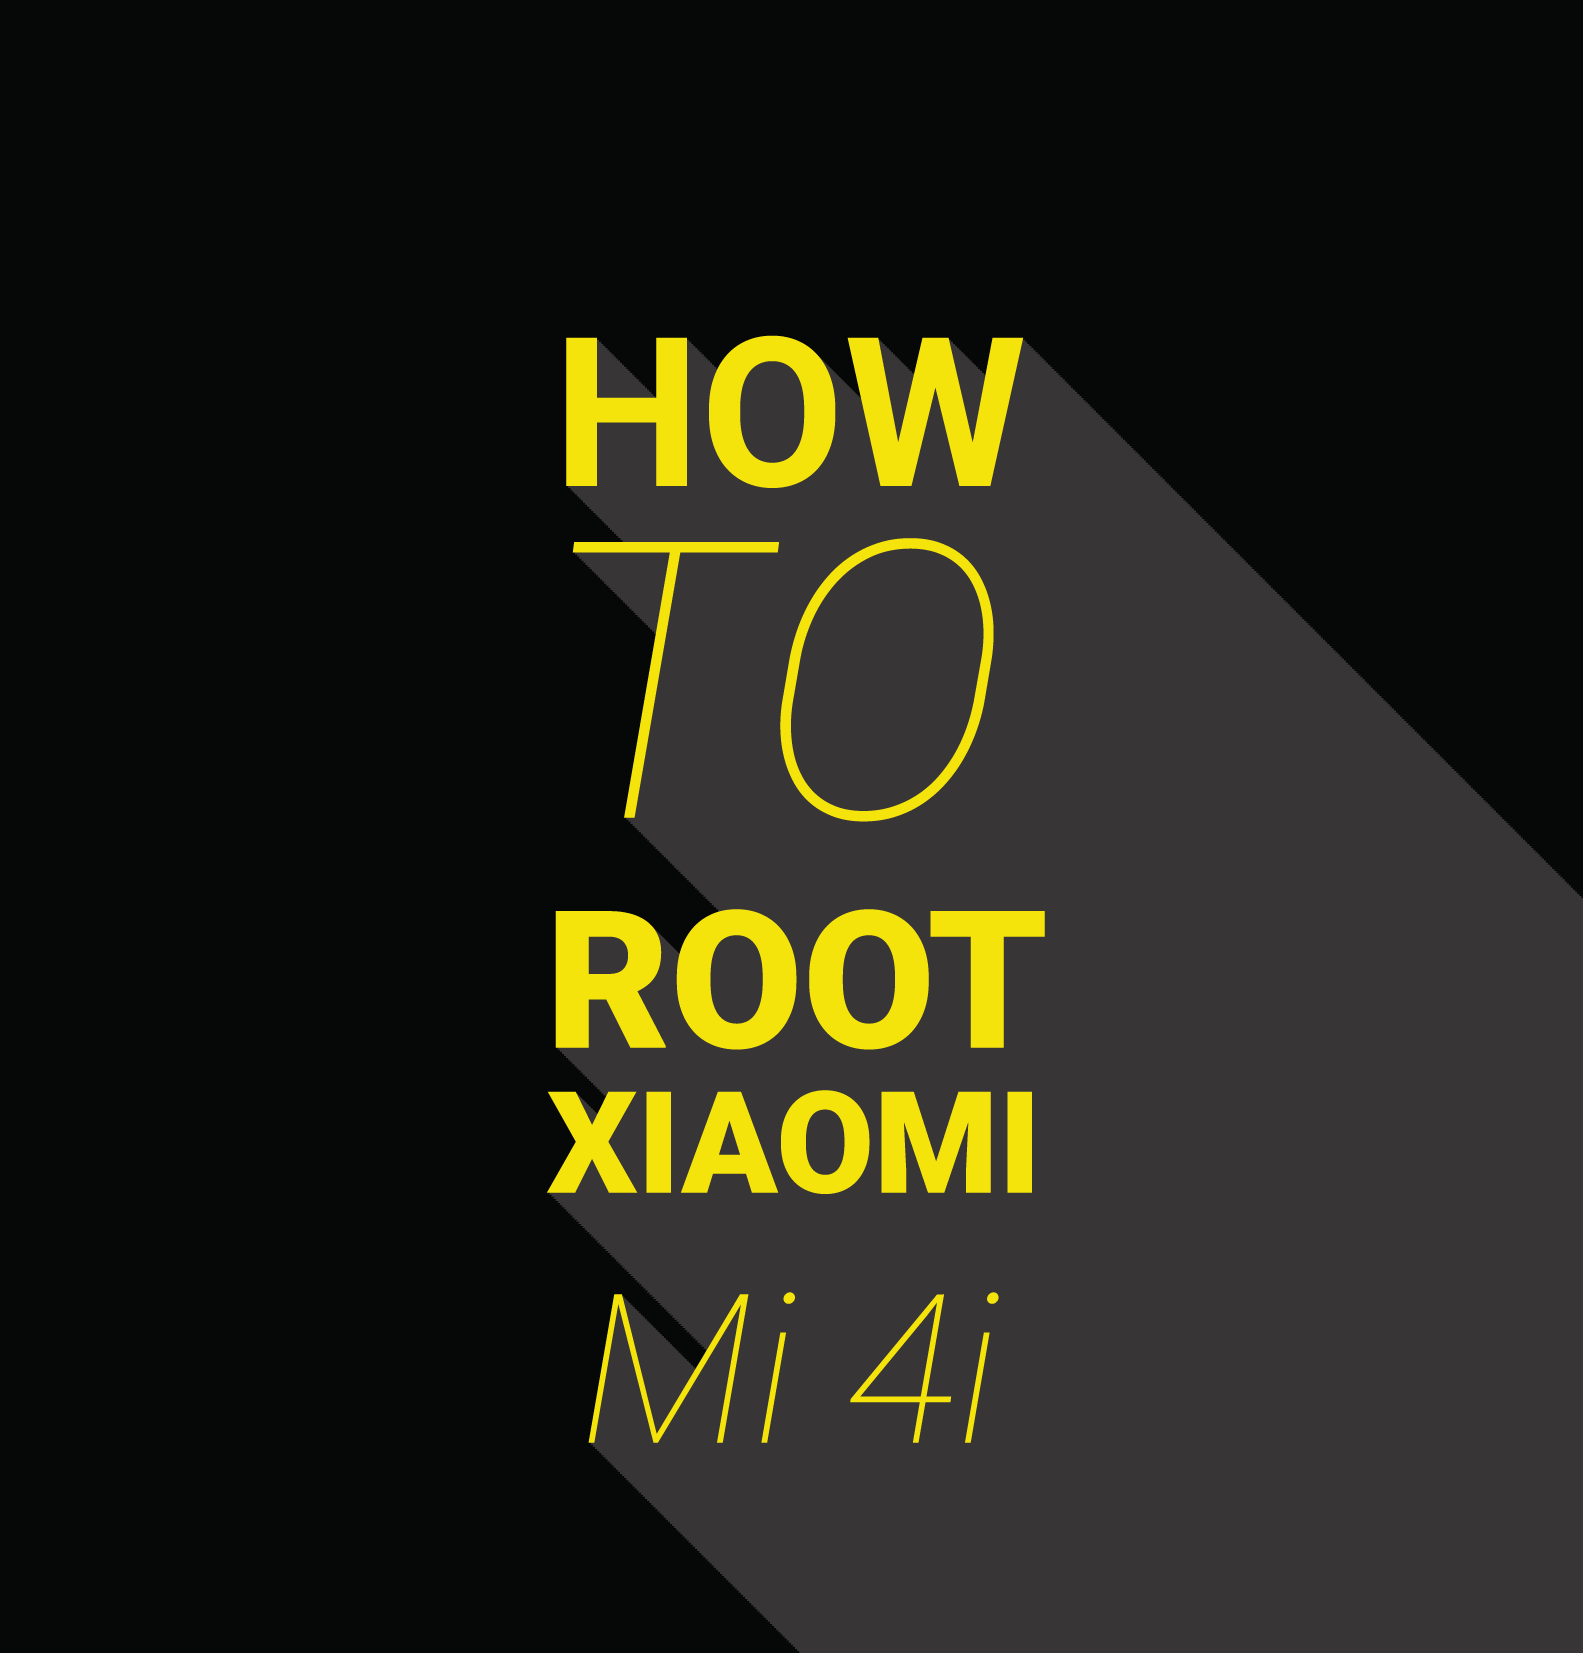 Rooting Xiaomi Smartphones : How To Root Xiaomi Mi 4i